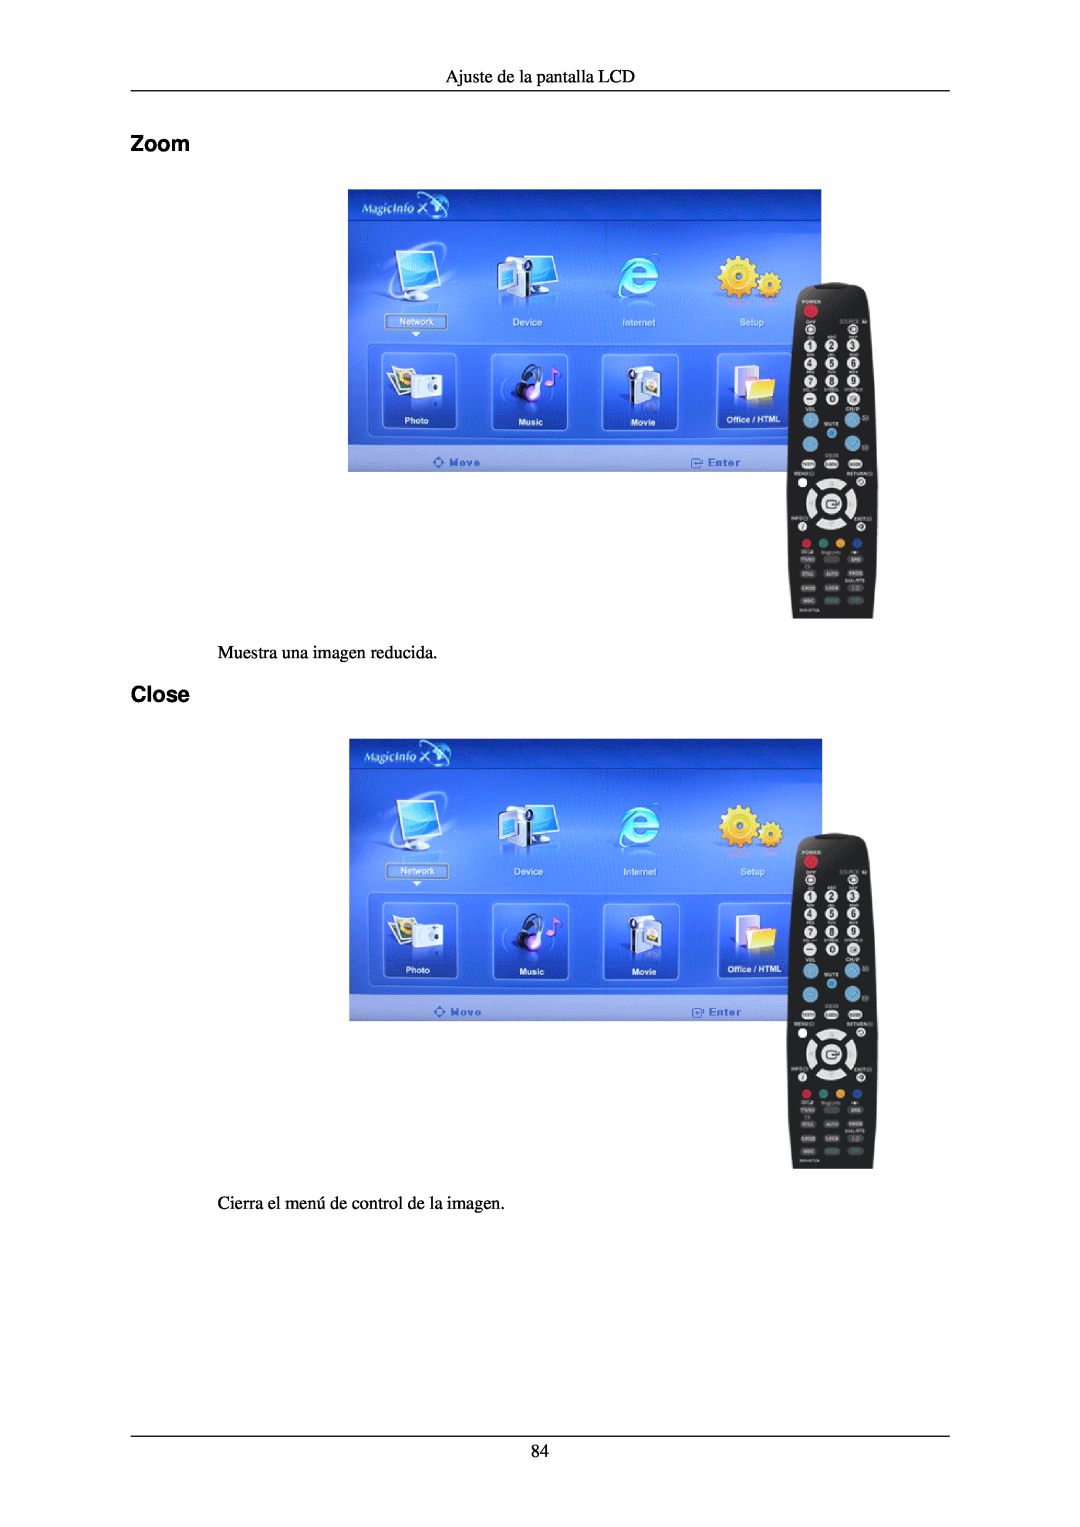 Samsung LH40TCUMBC/EN, LH40TCUMBG/EN, LH46TCUMBC/EN Zoom, Close, Ajuste de la pantalla LCD, Muestra una imagen reducida 